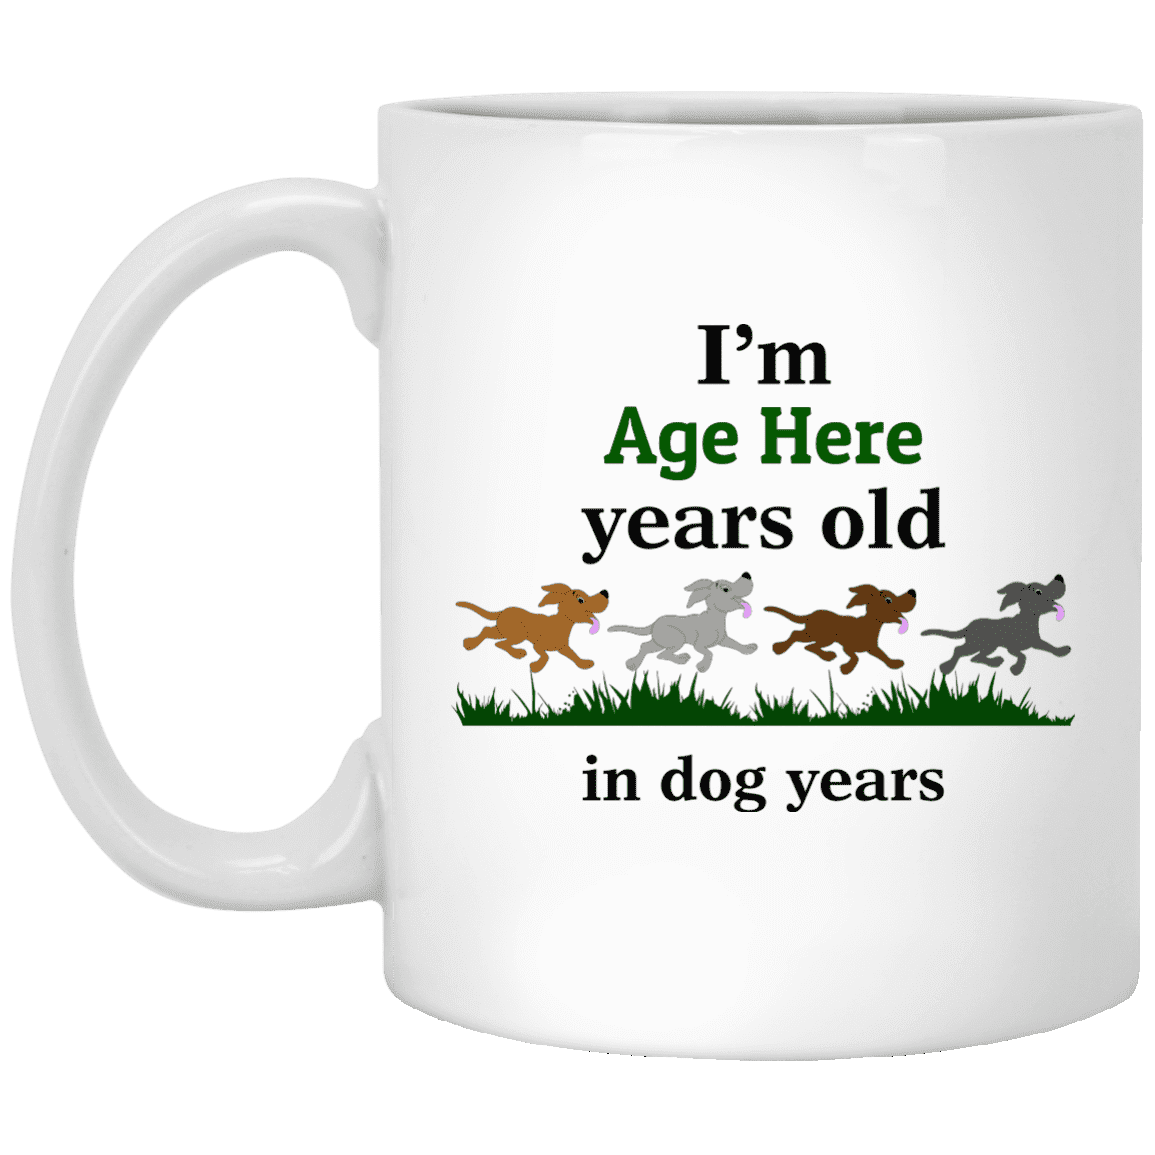 Personalized Dog Years - Mugs.